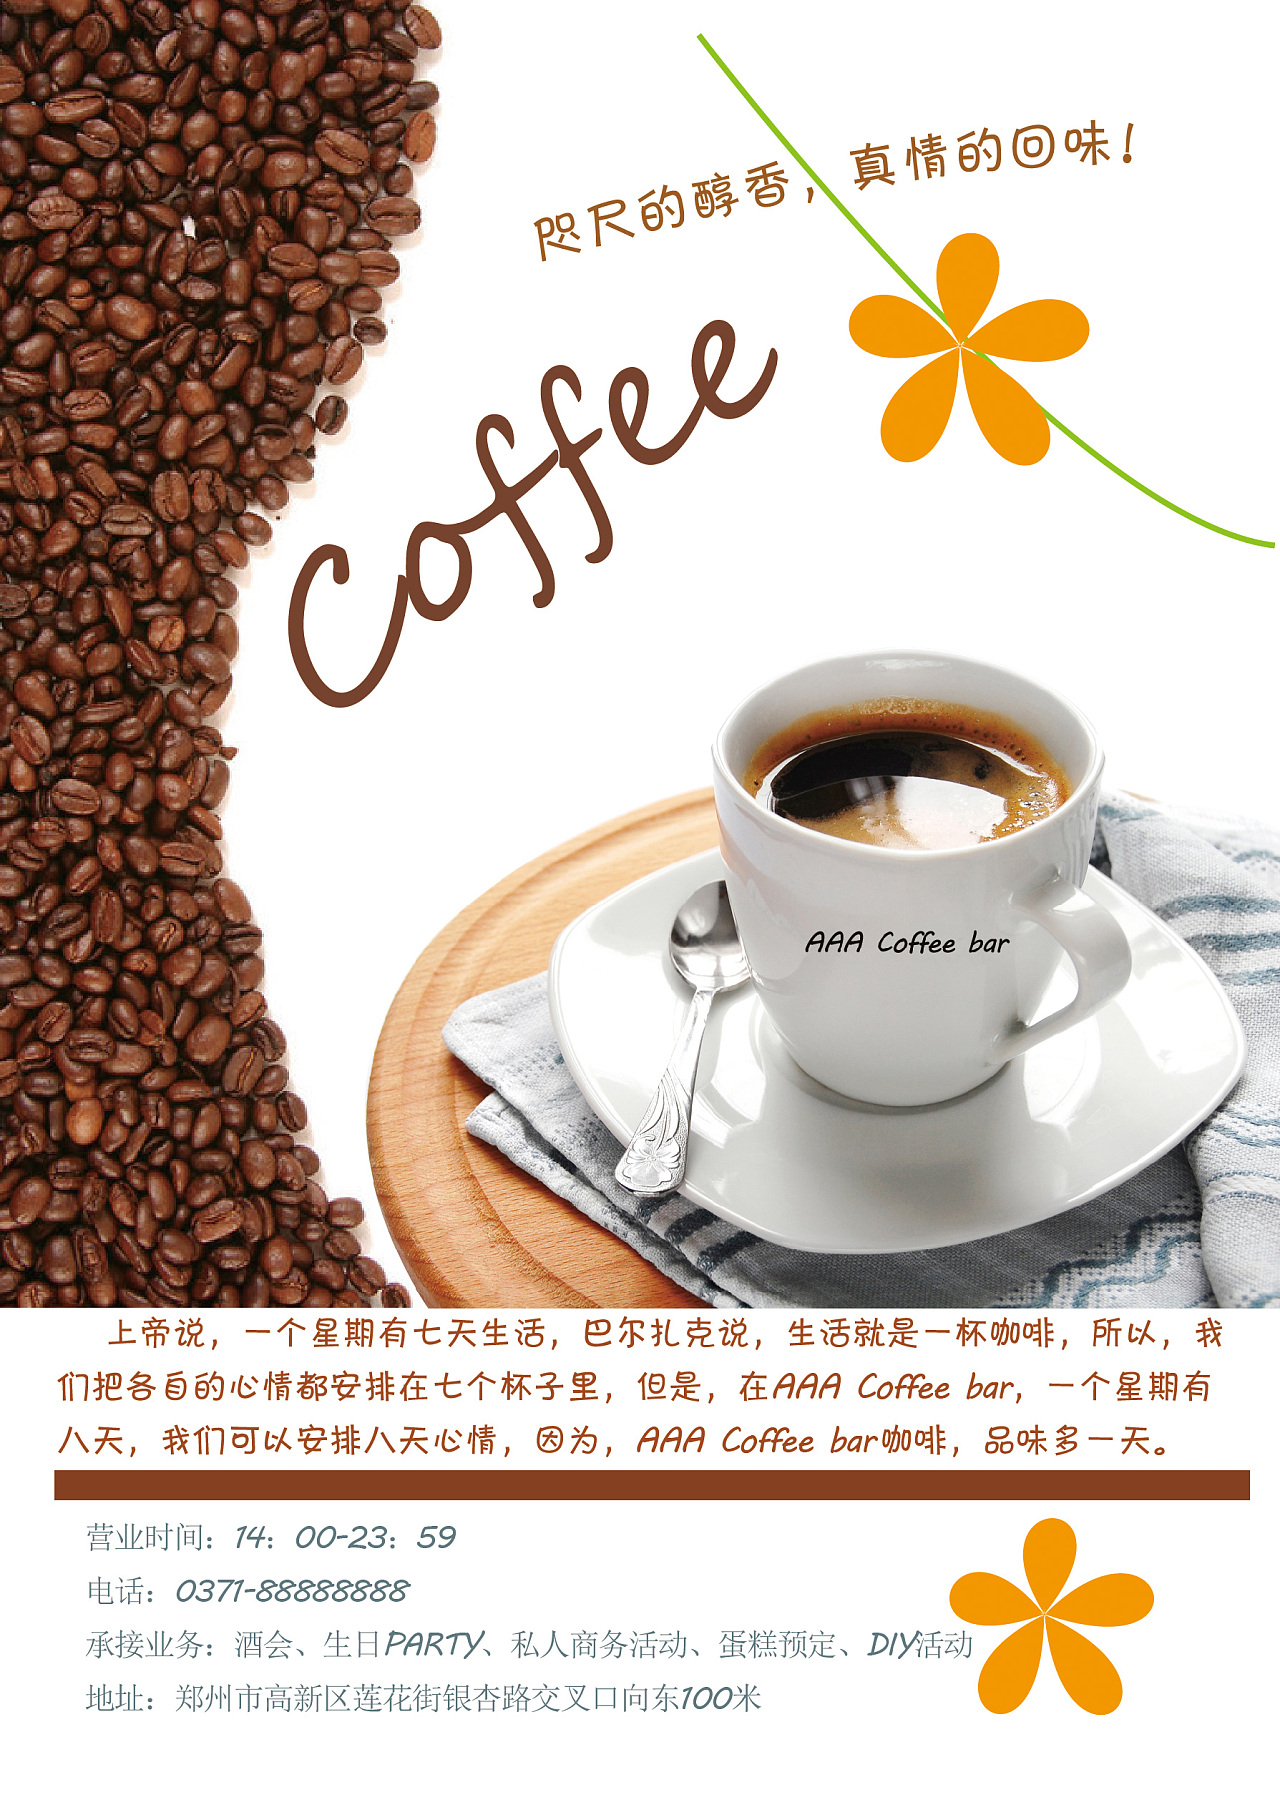 情人节奶茶饮品产品营销浪漫海报_图片模板素材-稿定设计